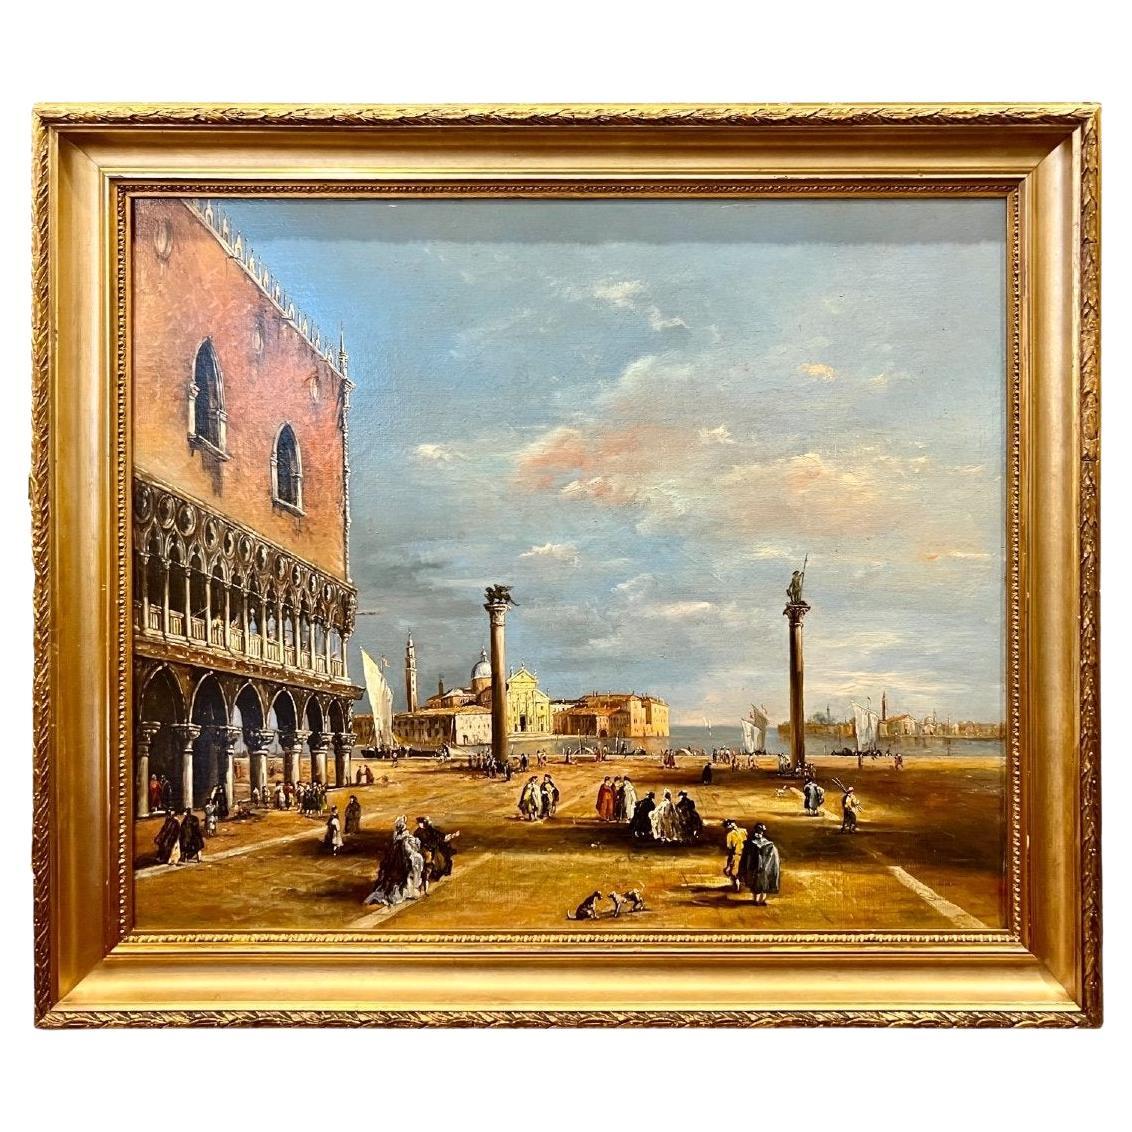 Peinture à l'huile sur toile du 19ème siècle de Venise dans le style de Canaletto